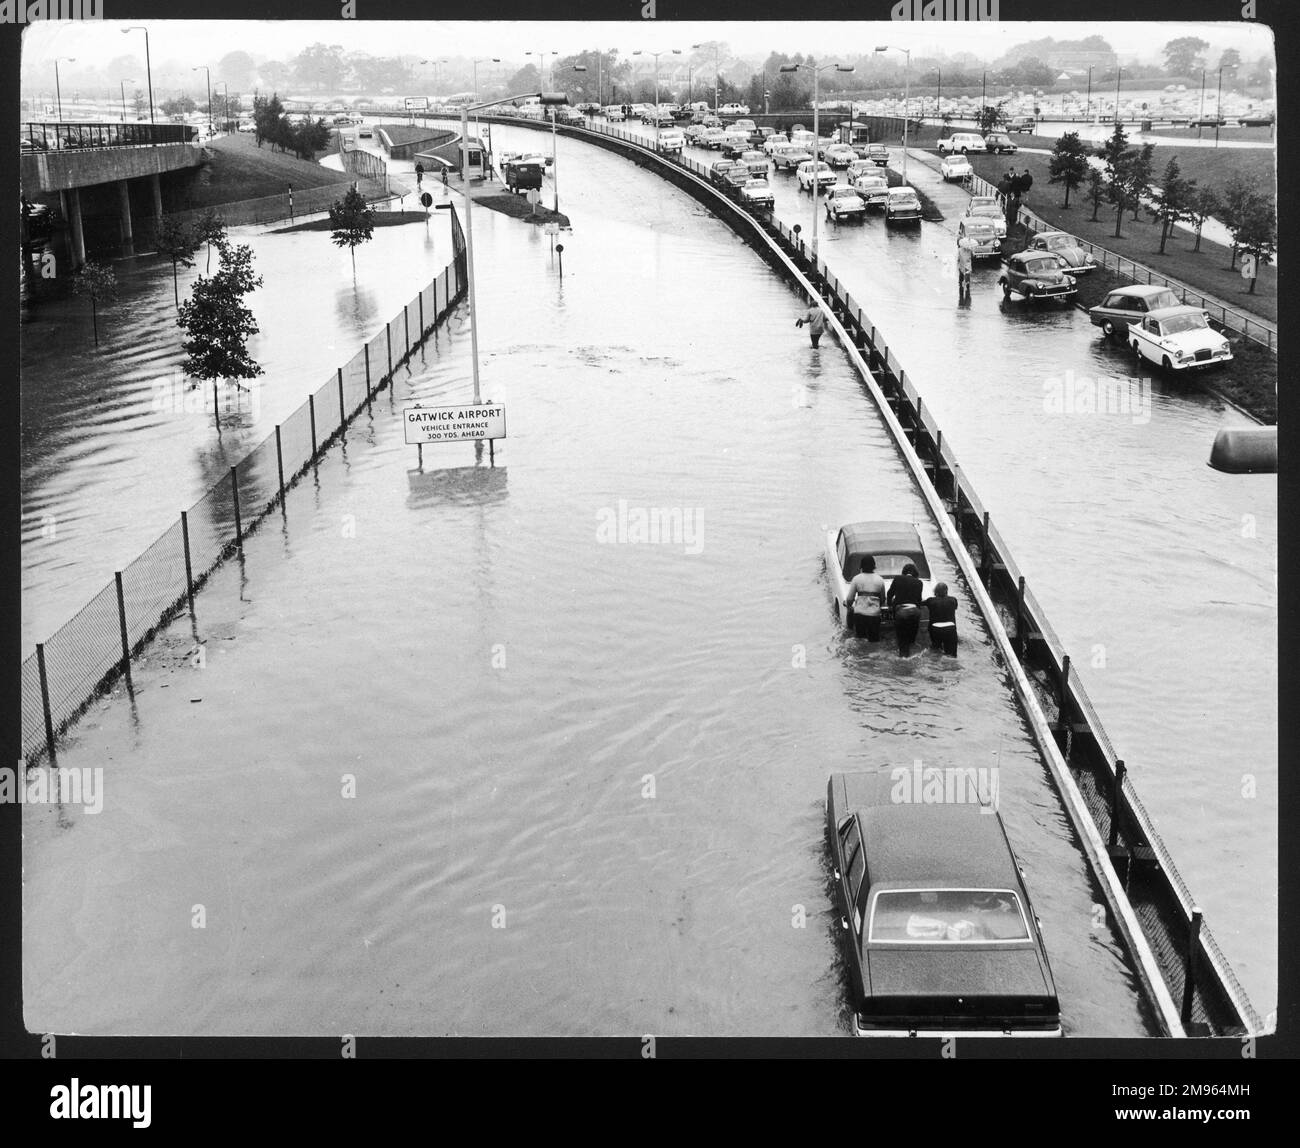 Une scène incroyable, comme quelque chose d'un film de catastrophe, alors que les gens se sont mis à traverser les inondations, poussant leurs voitures sur la route A23 à l'extérieur de l'aéroport de Gatwick, en Angleterre. Banque D'Images